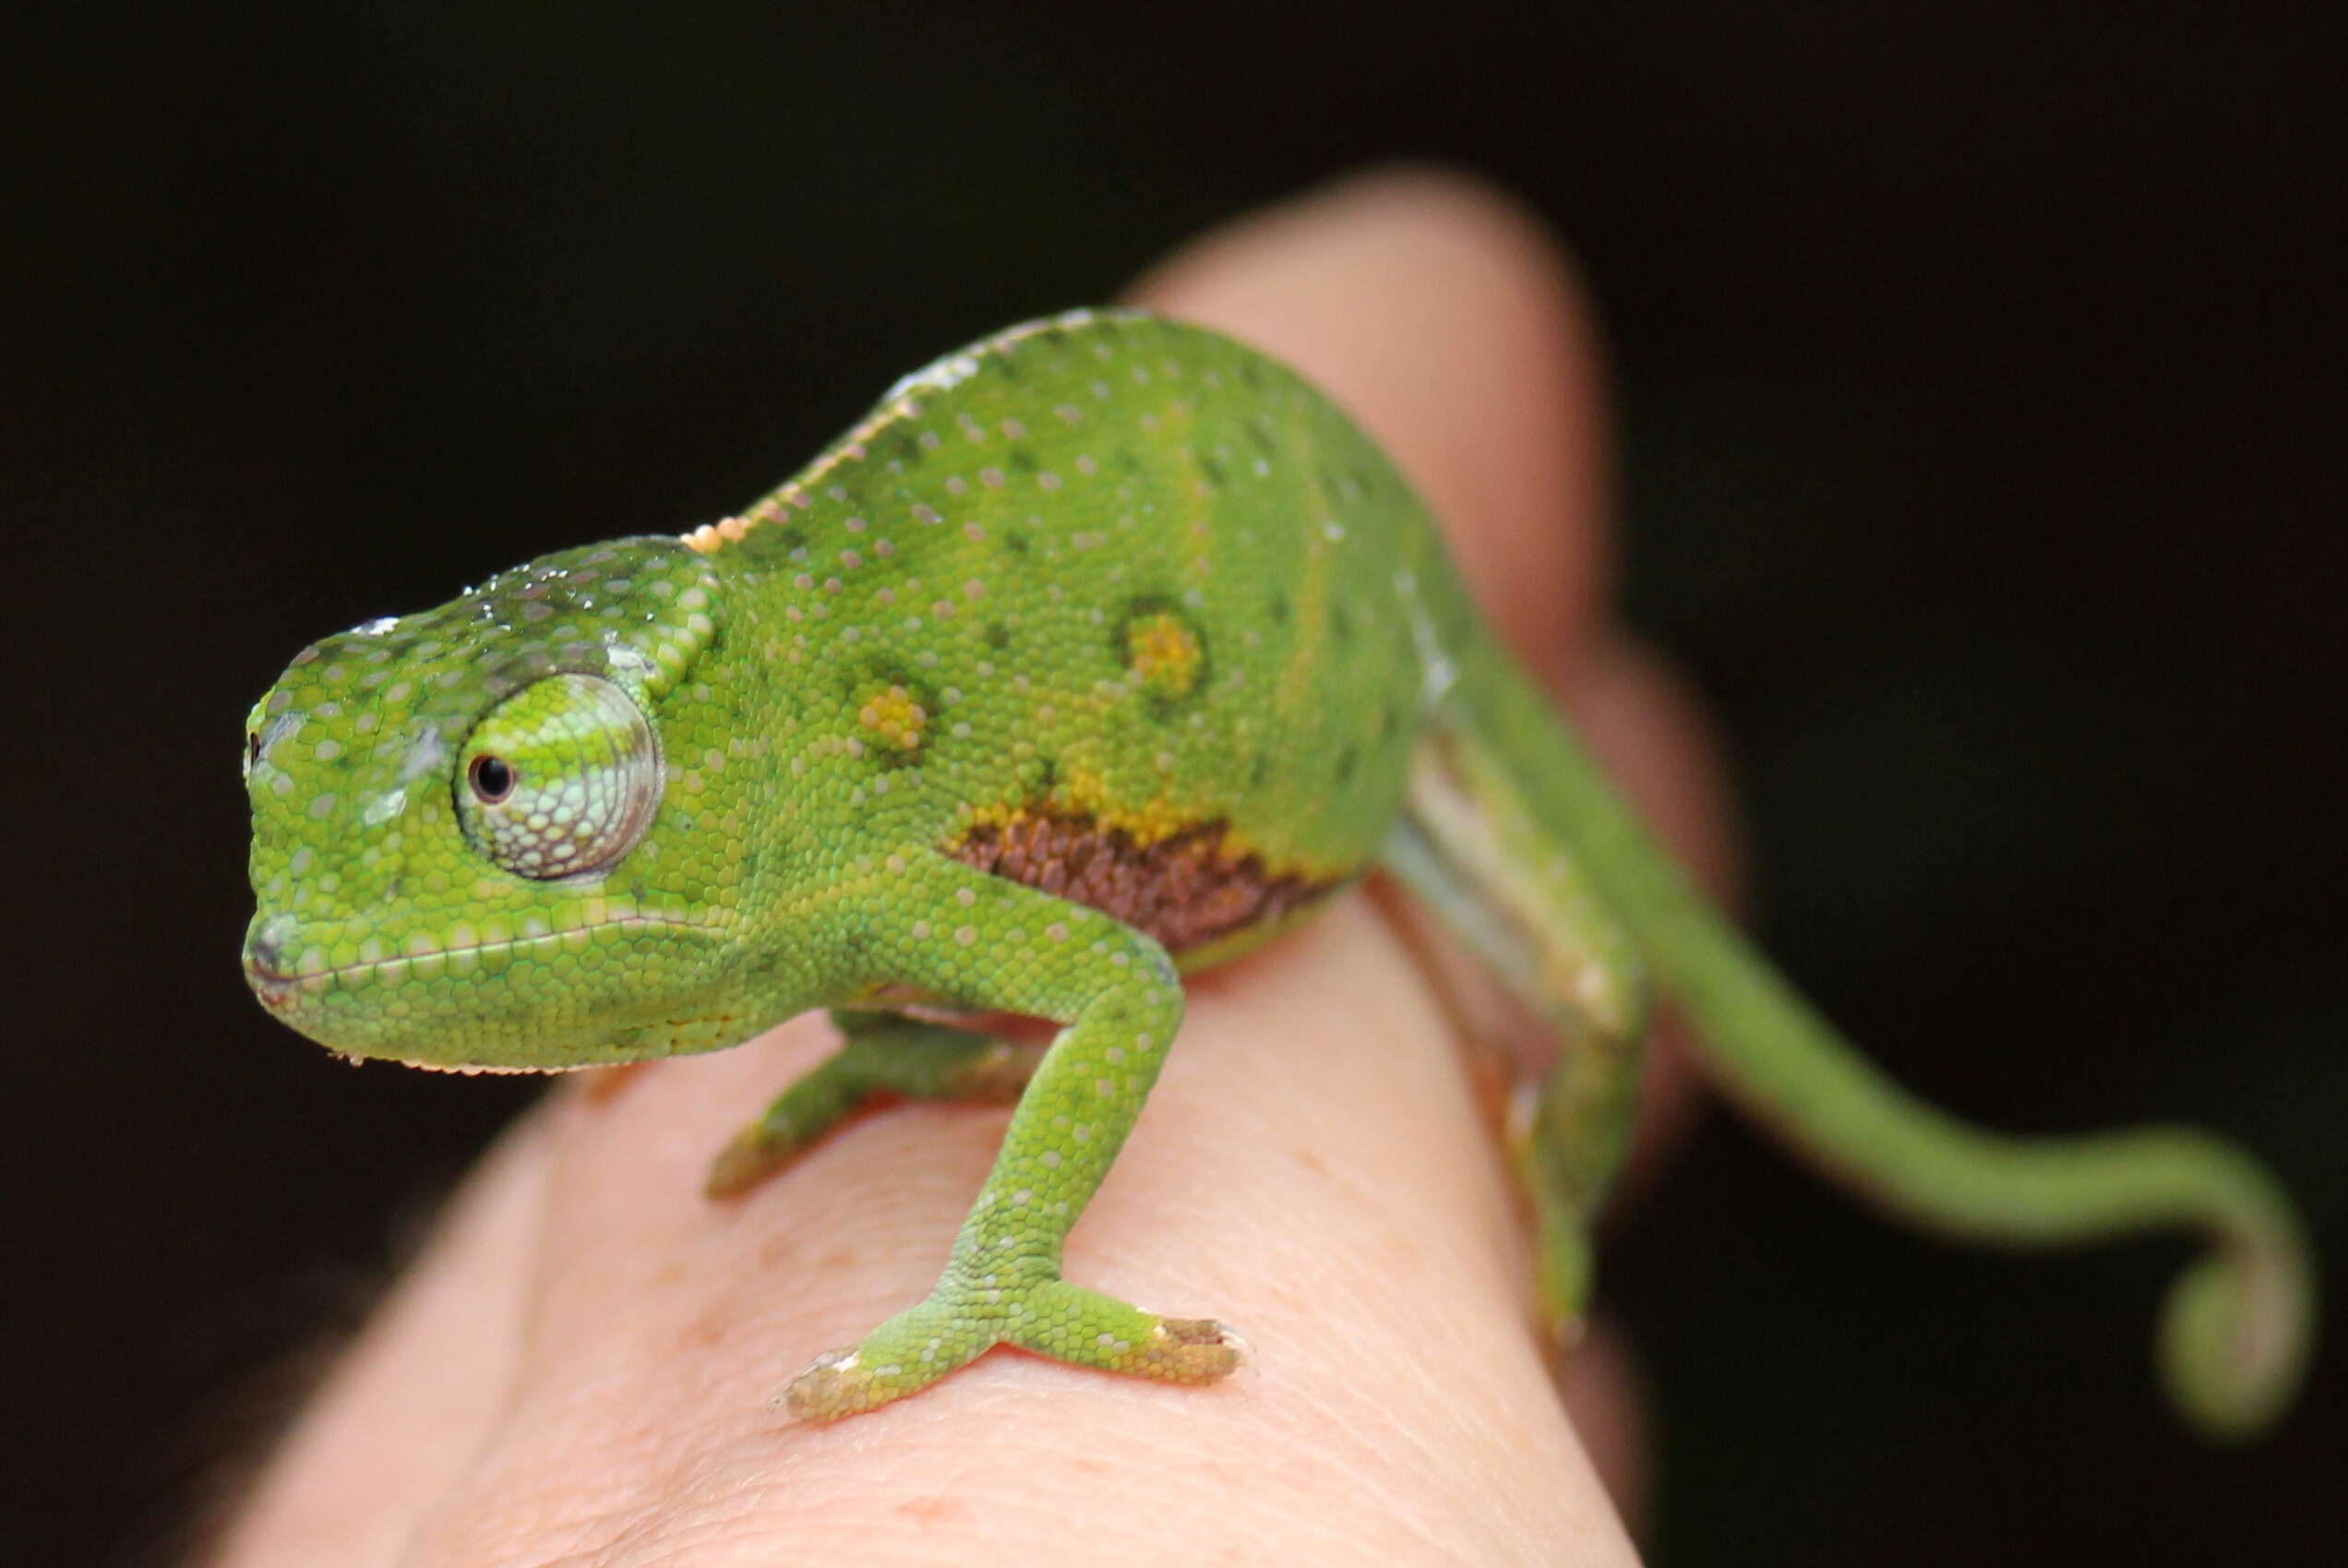 Image of Will's chameleon